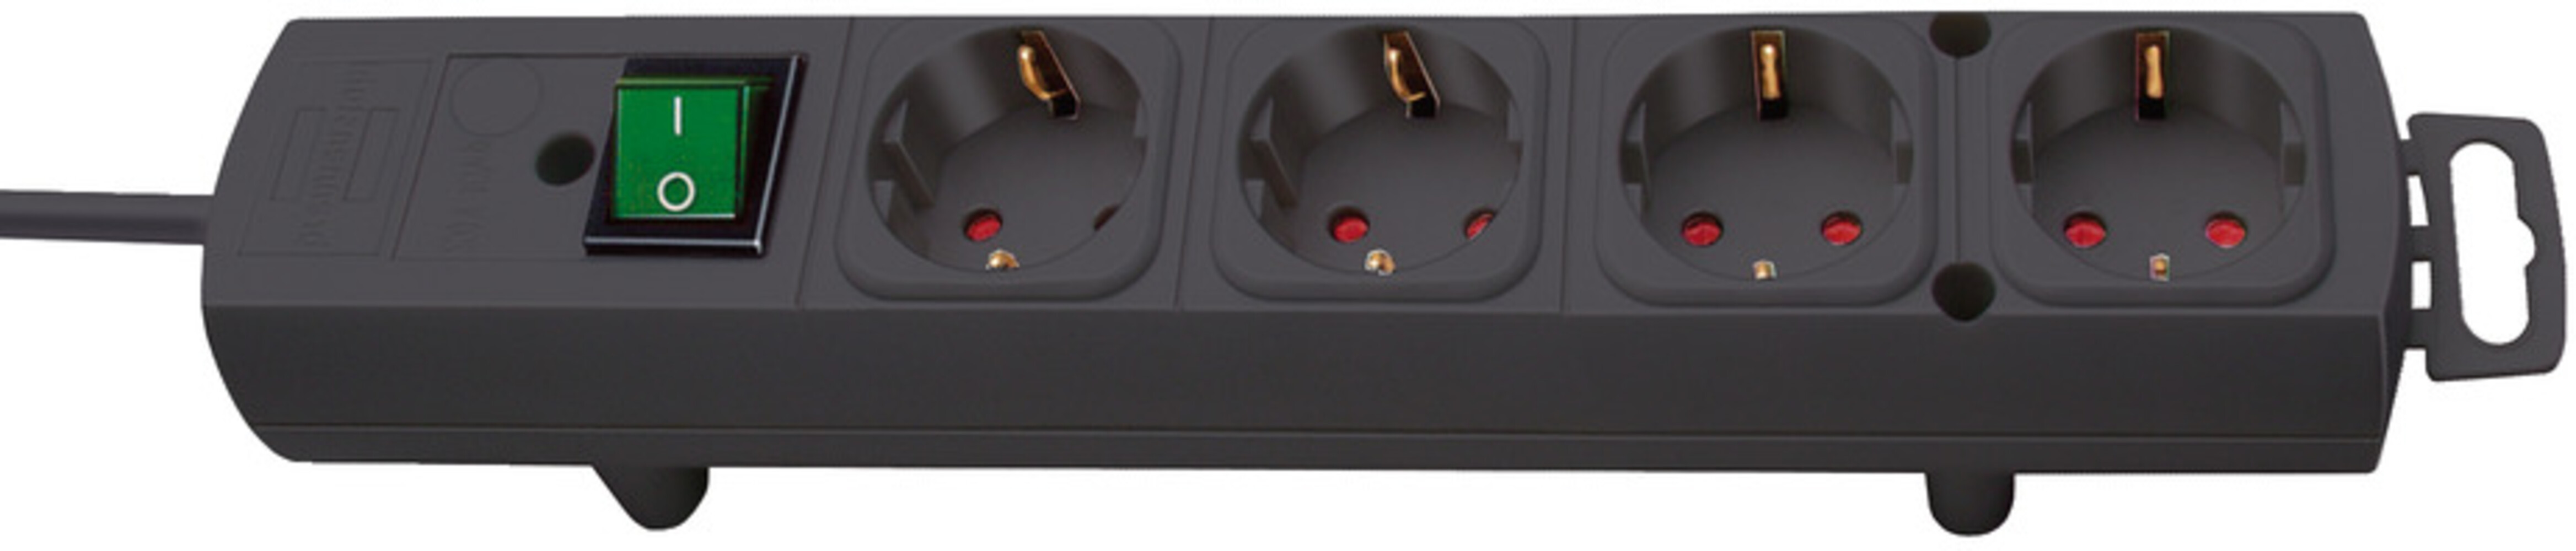 Schwarze 4-fach Steckdosenleiste der Marke Brennenstuhl mit zusätzlichem Schalter und 2m Kabel